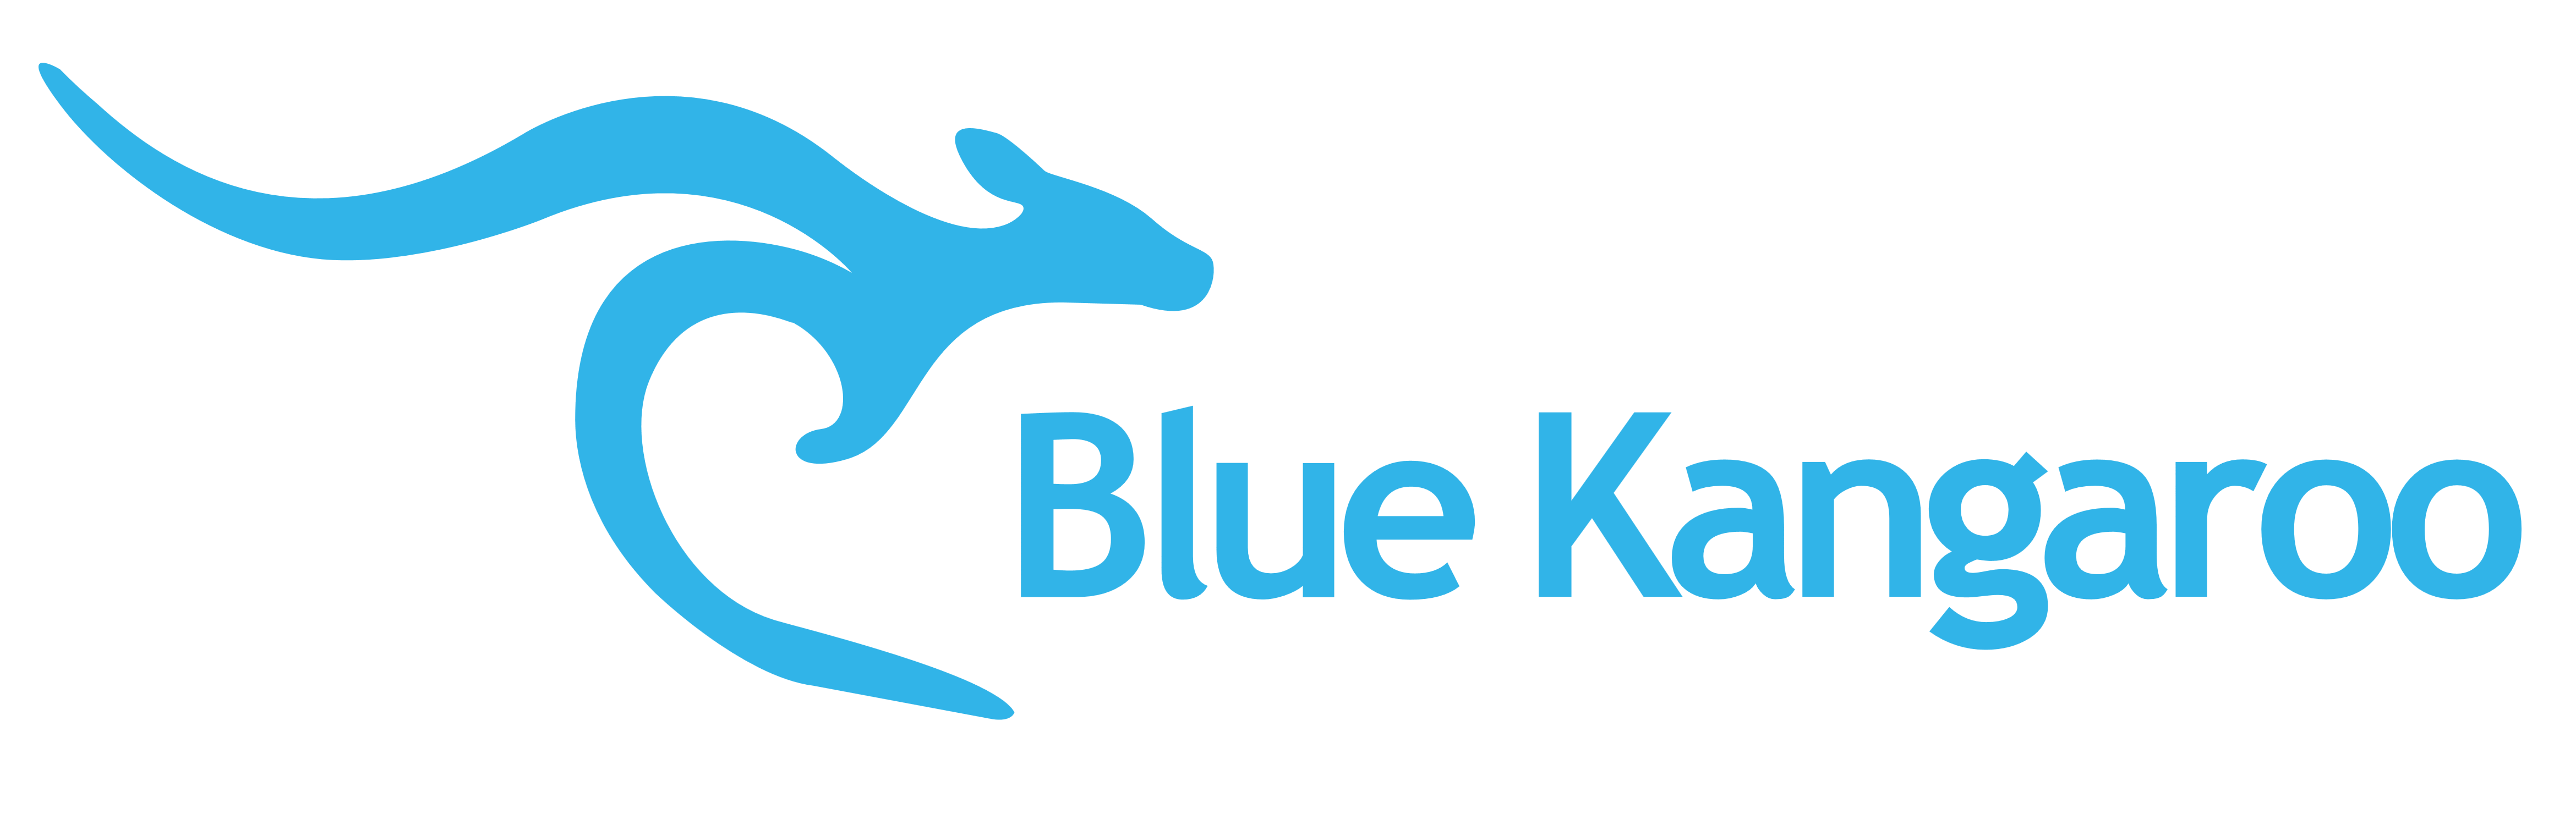 Blue Kangaroo logo, logotype